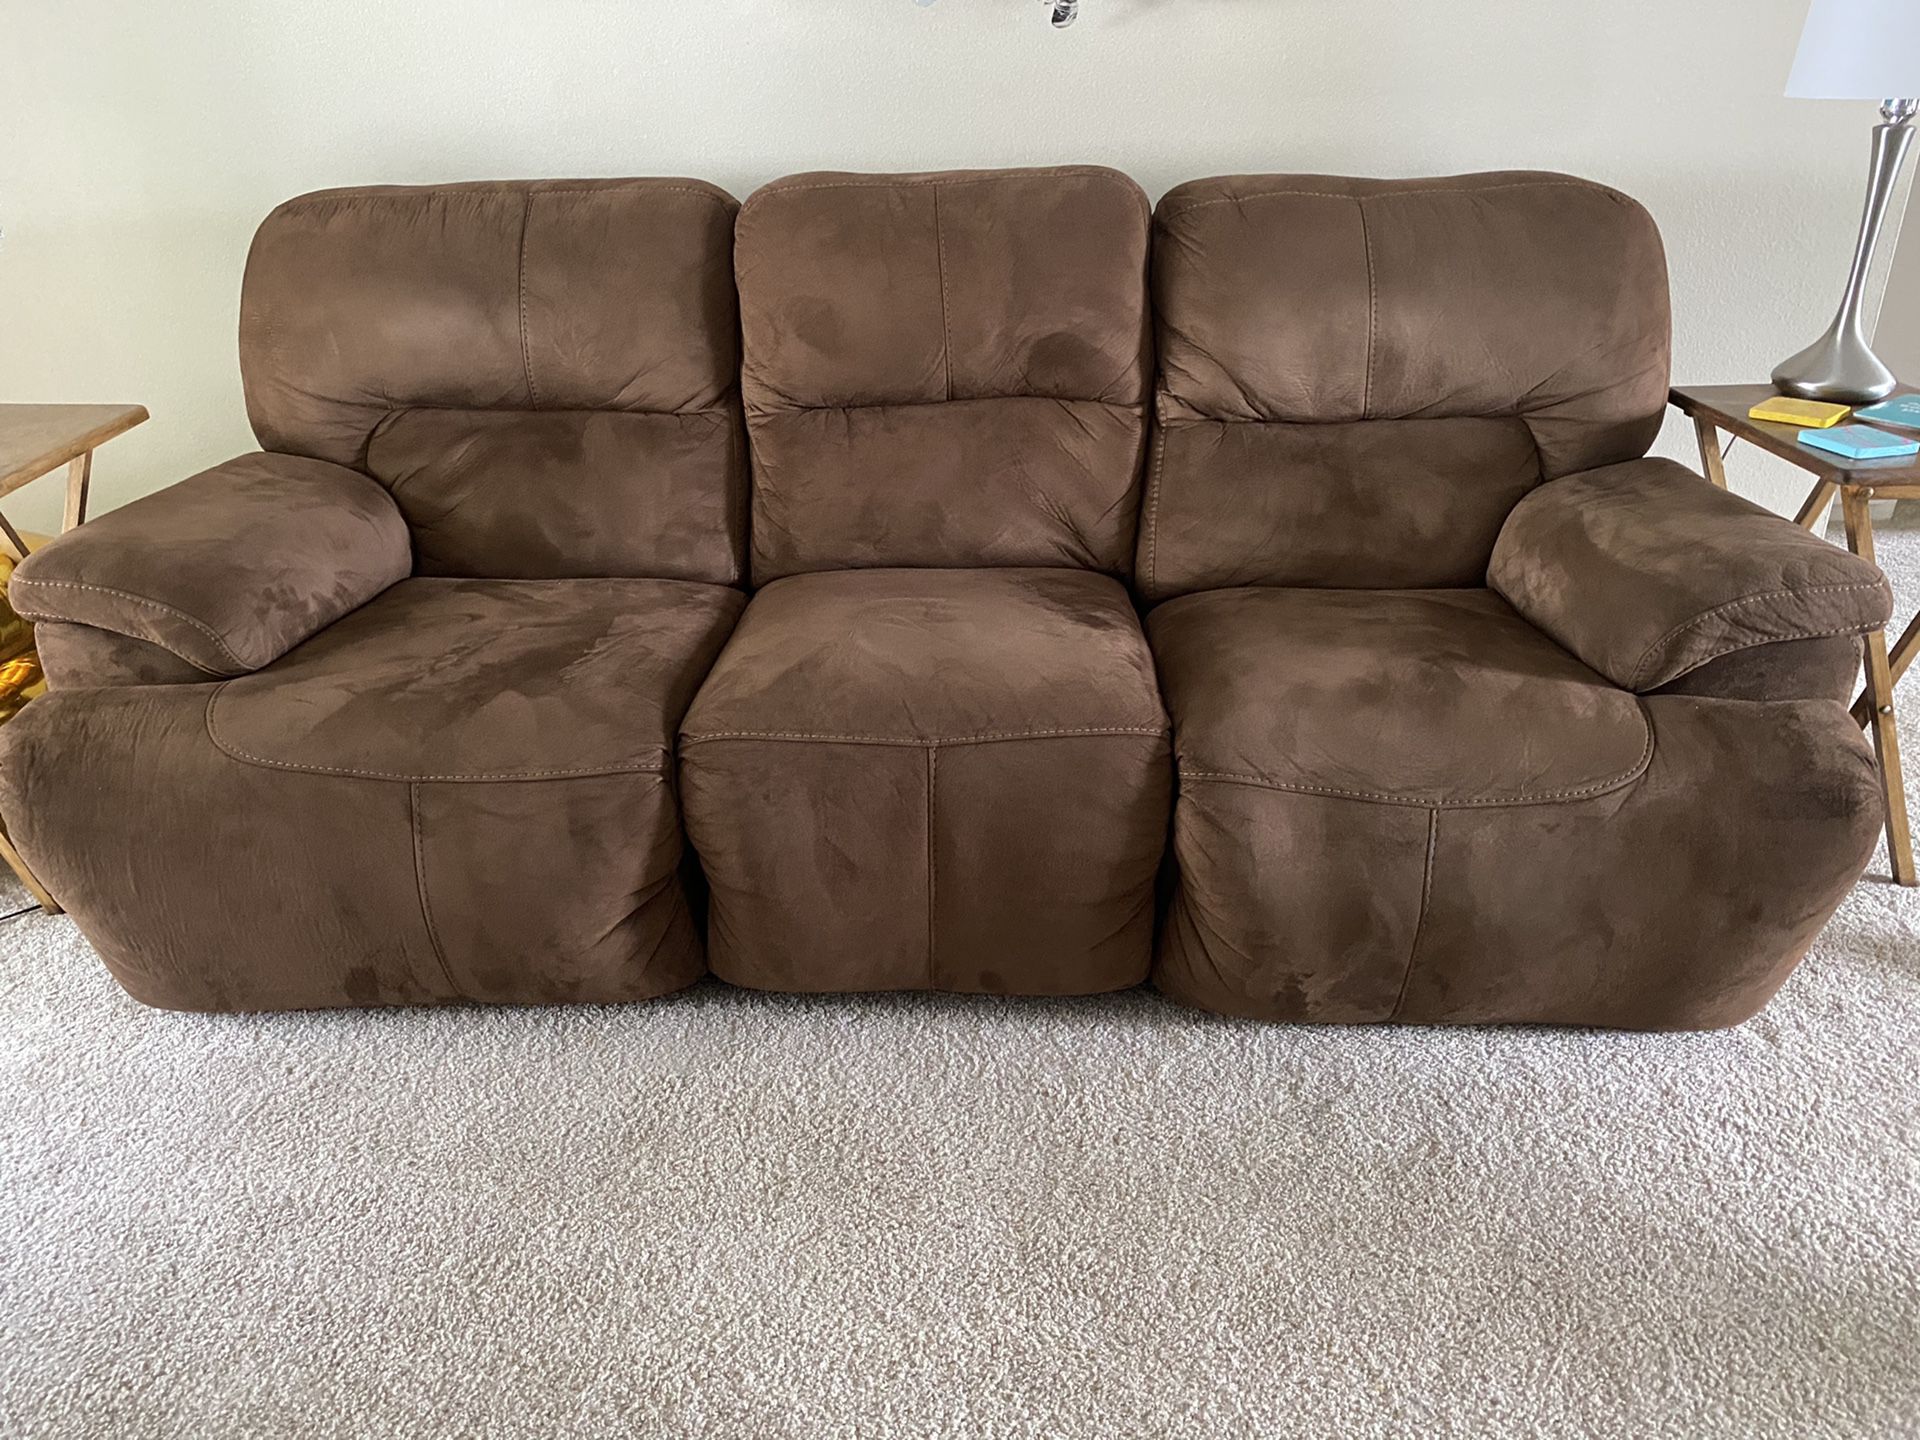 Dark brown couch